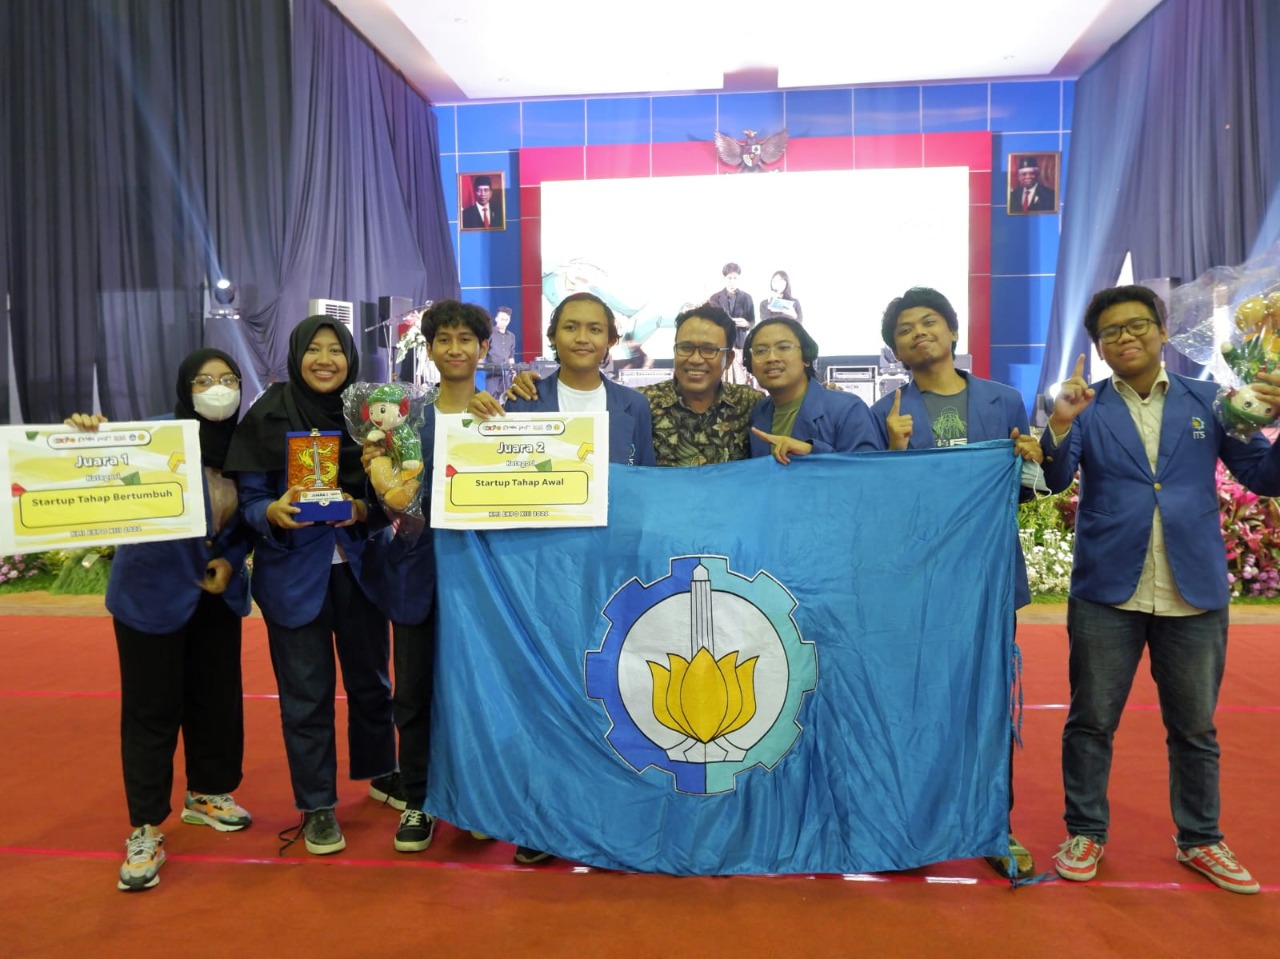 Tim Drafta Indonesia ITS yang berhasil meraih gelar Juara I Startup Tahap Bertumbuh